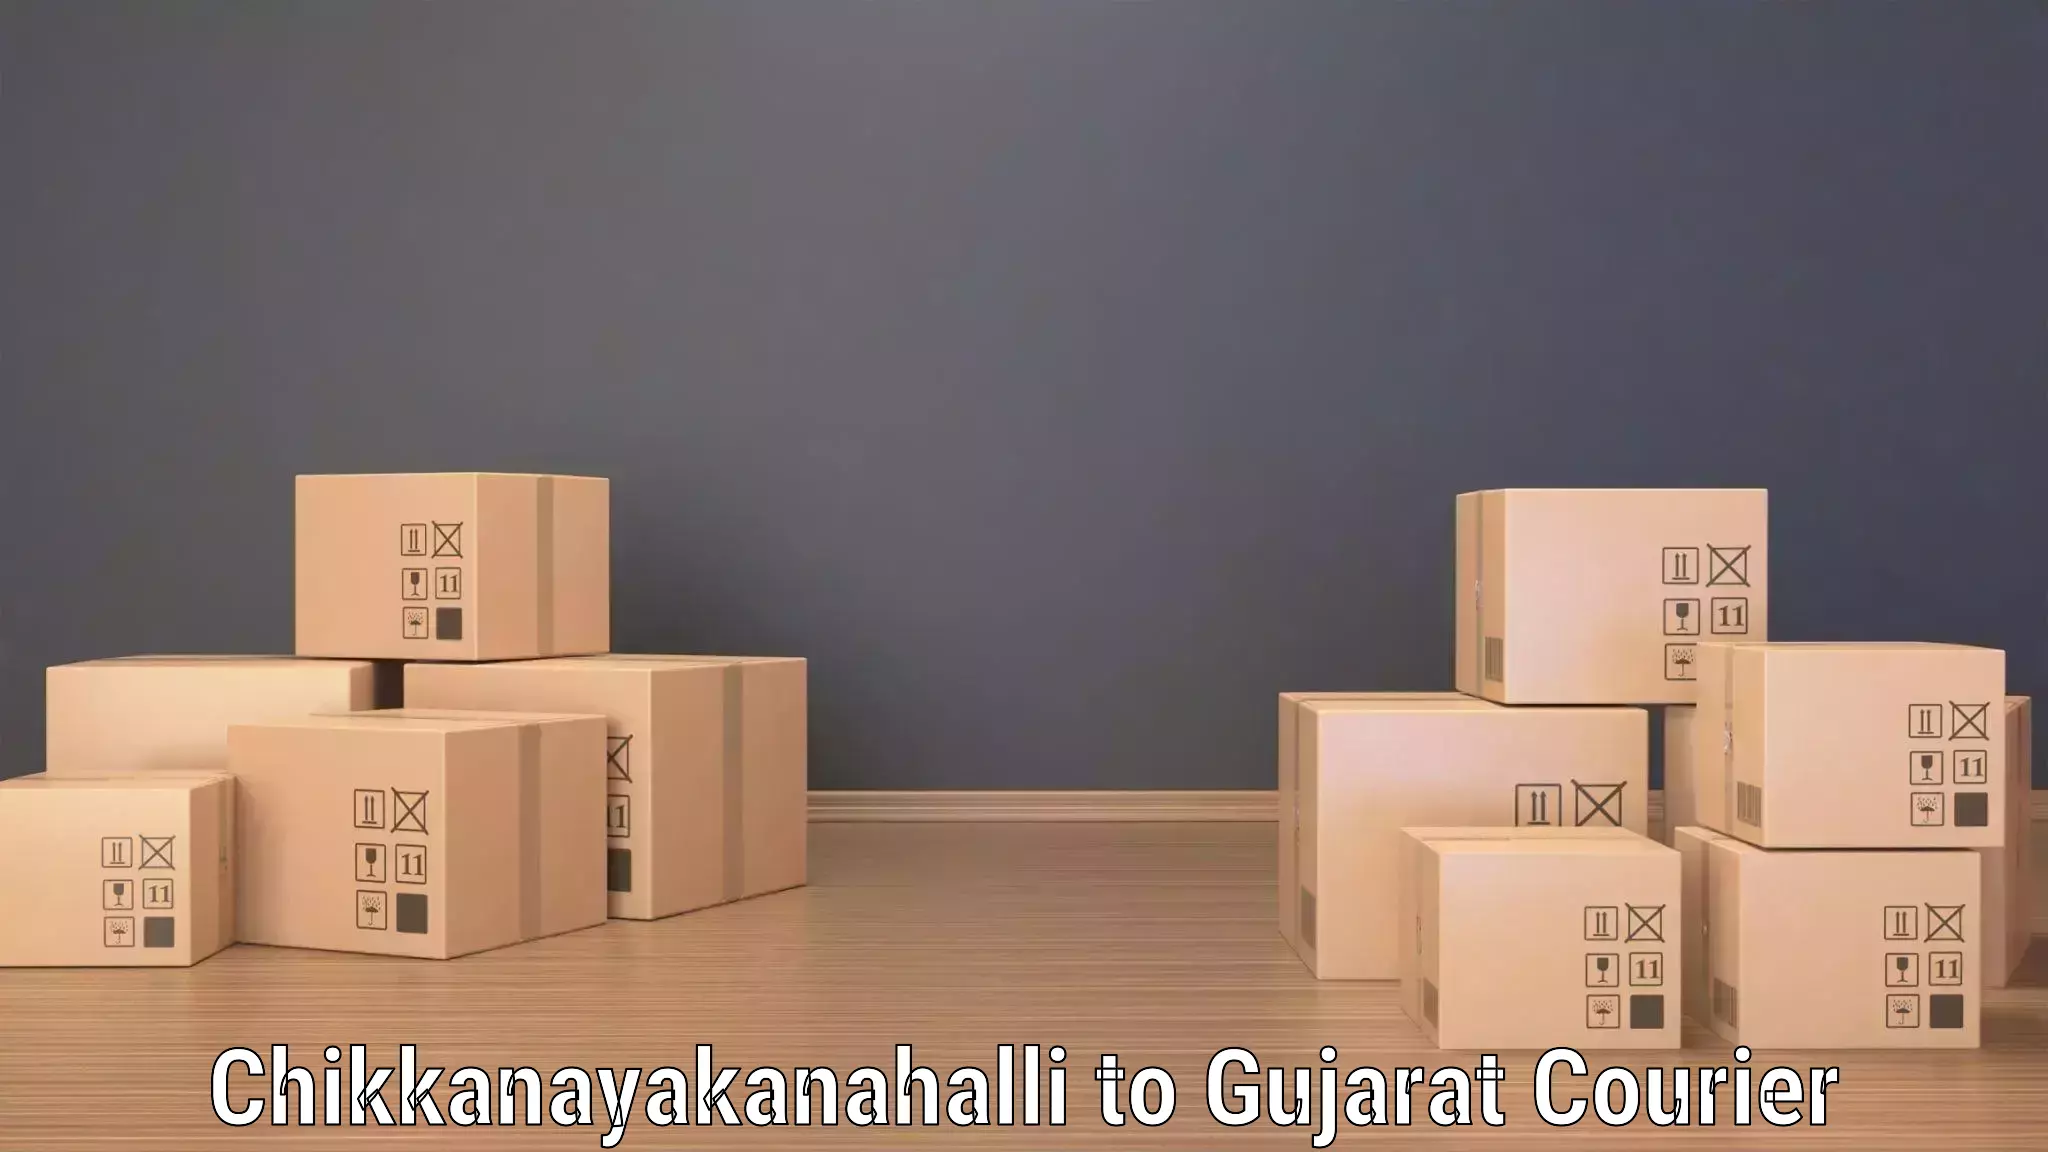 Supply chain efficiency Chikkanayakanahalli to Vatadara